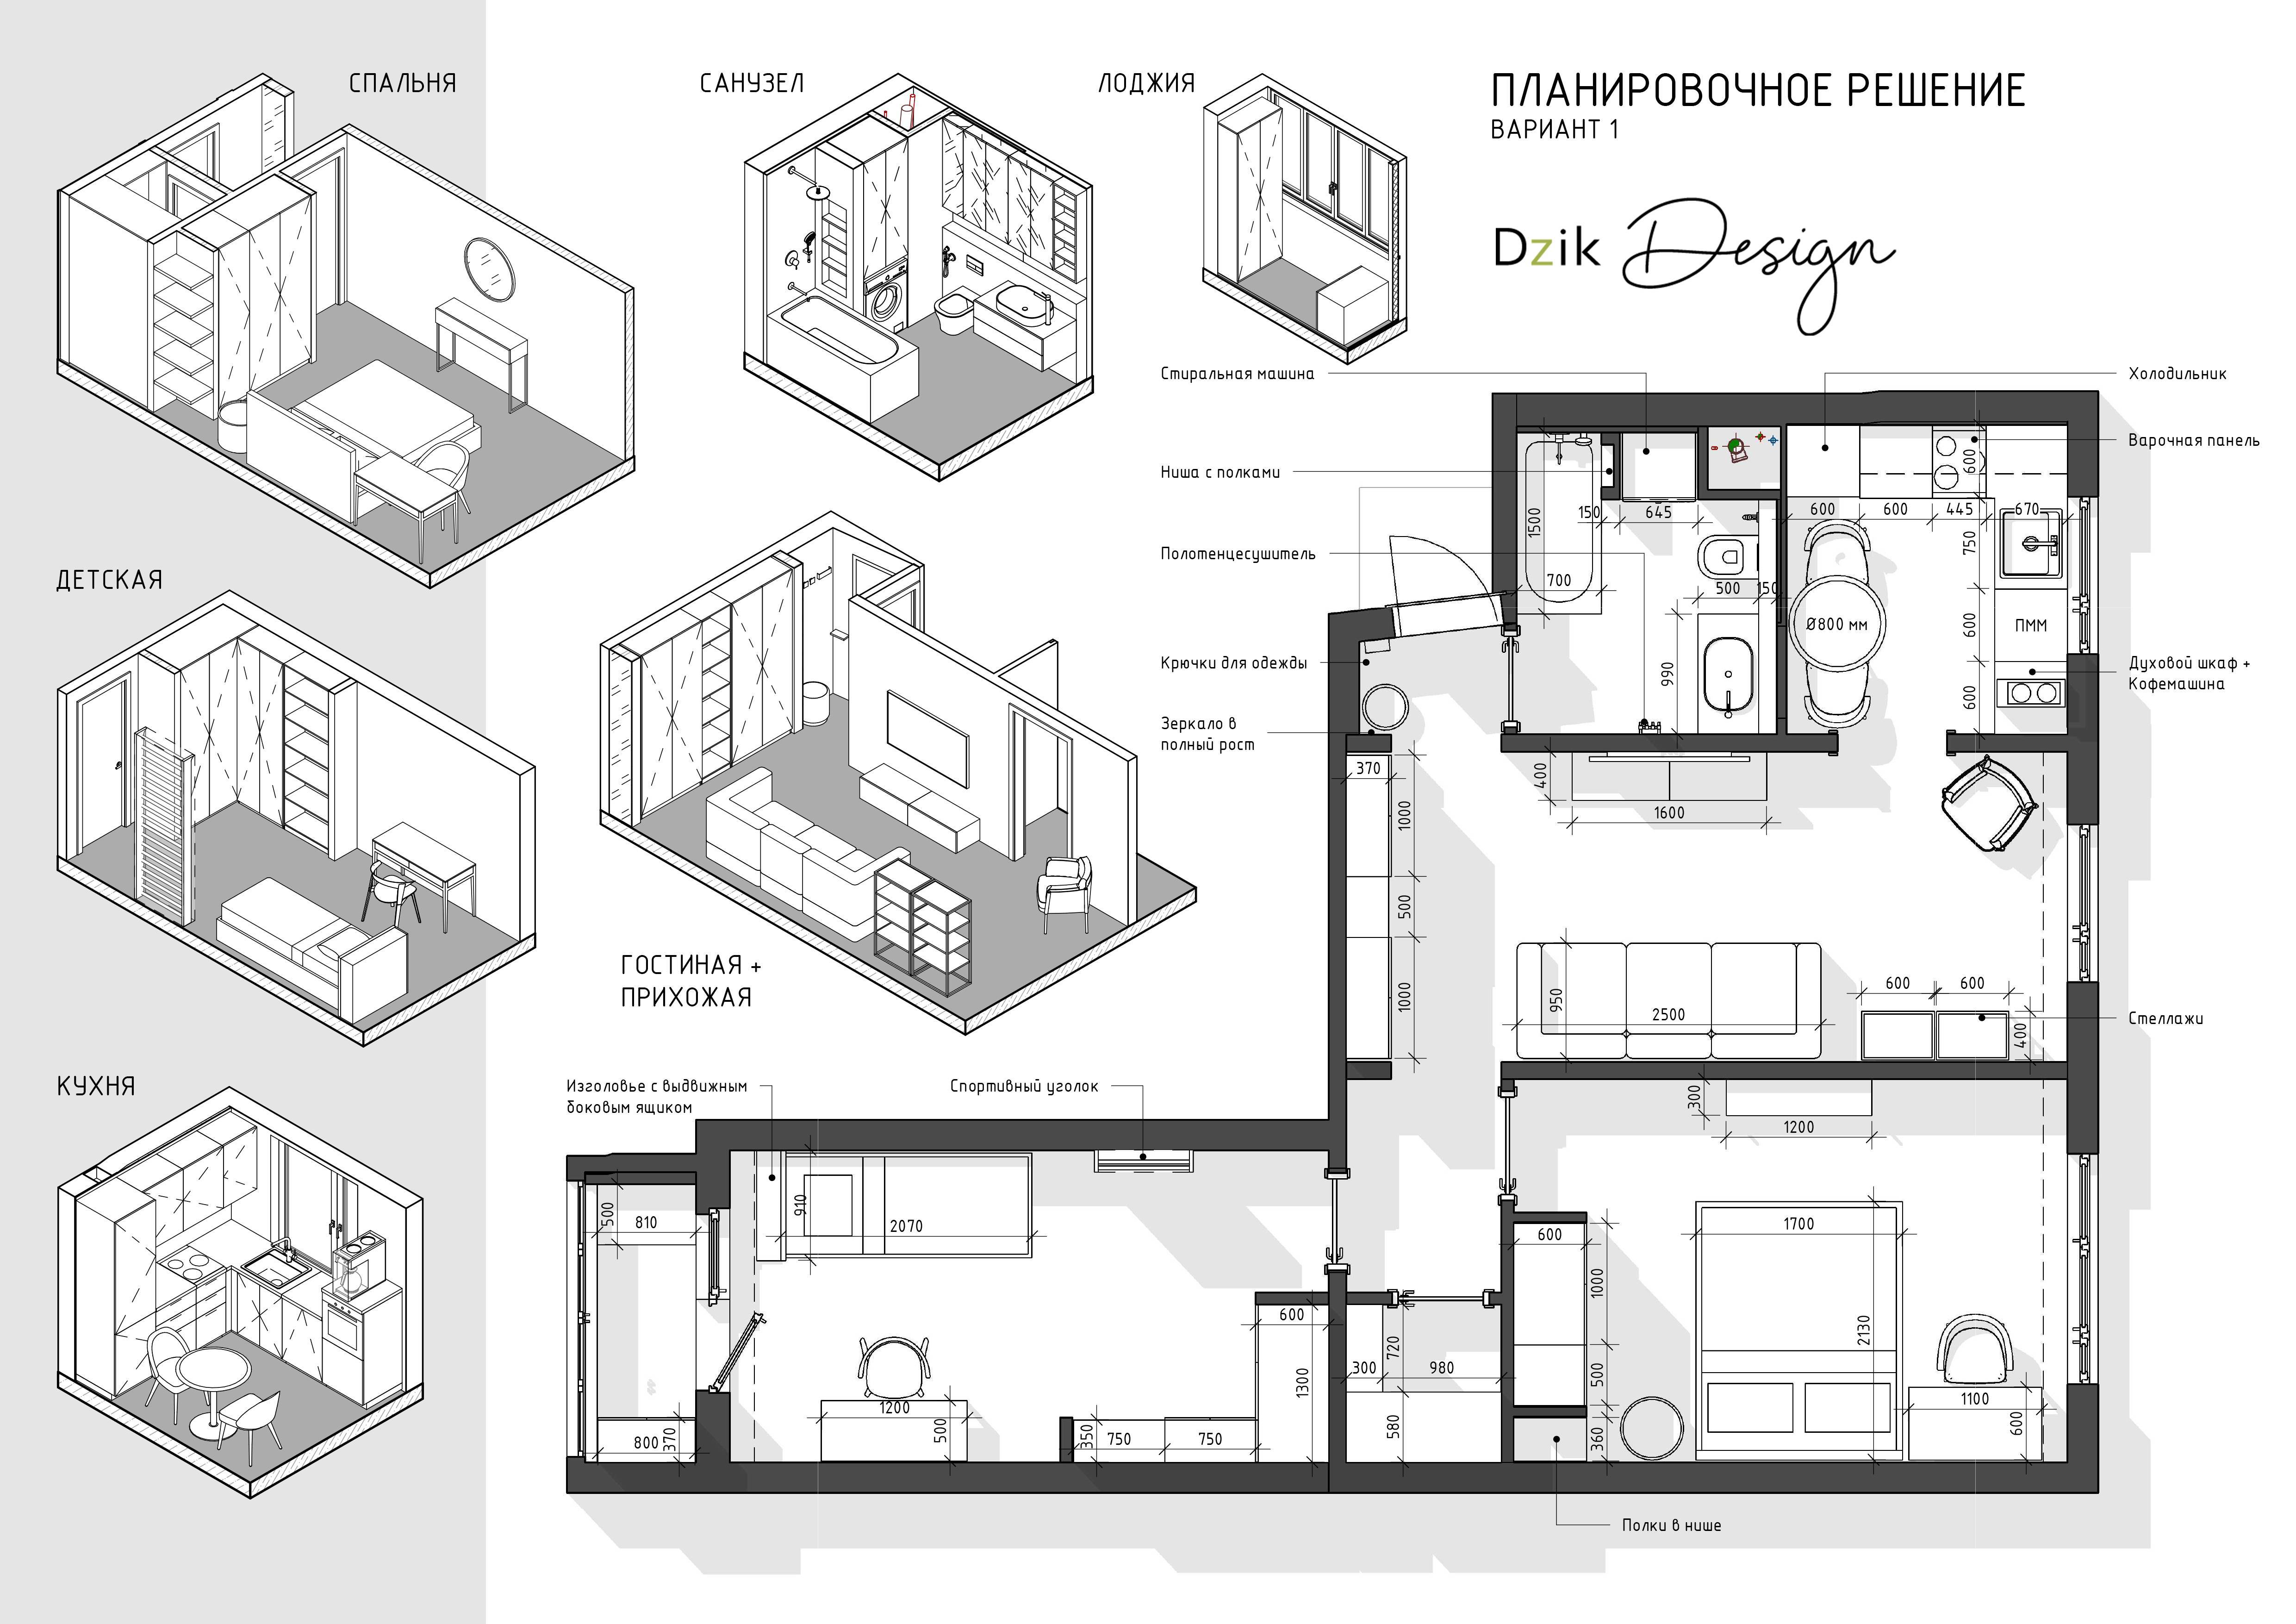 Как сделать дизайн-проект самостоятельно: советы по планировке квартиры - выискали